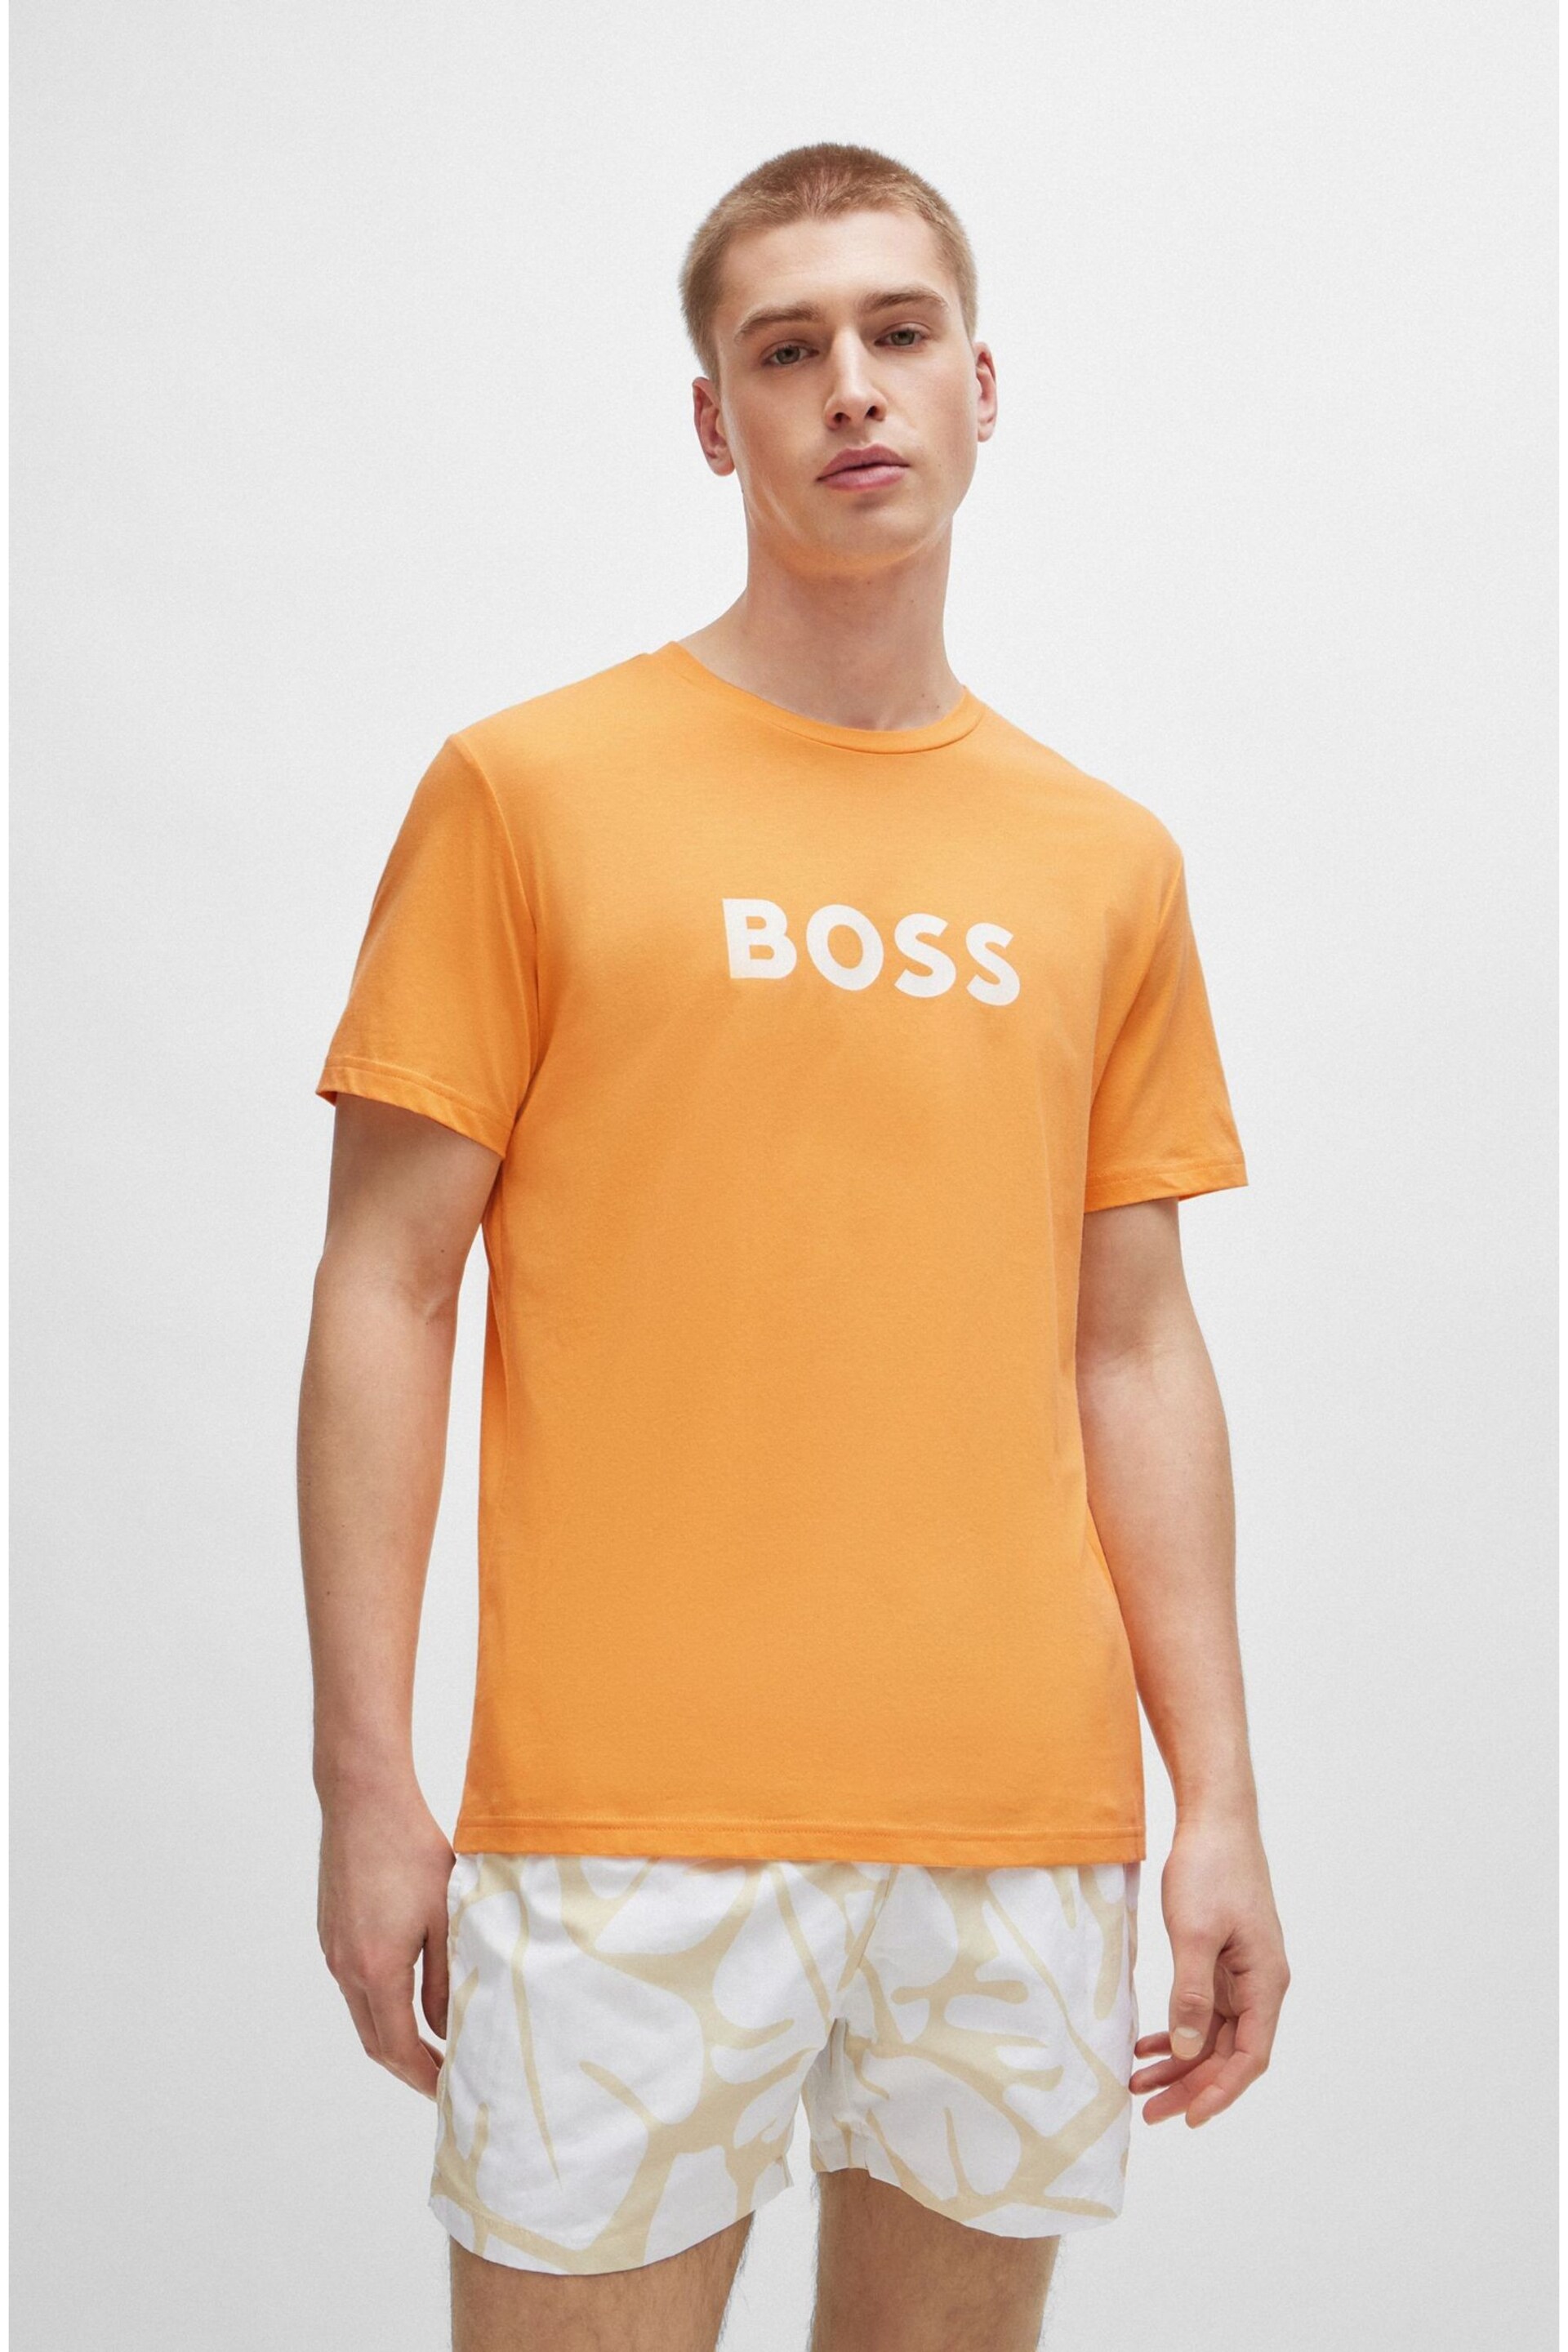 BOSS Orange Large Chest Logo T-Shirt - Image 1 of 3